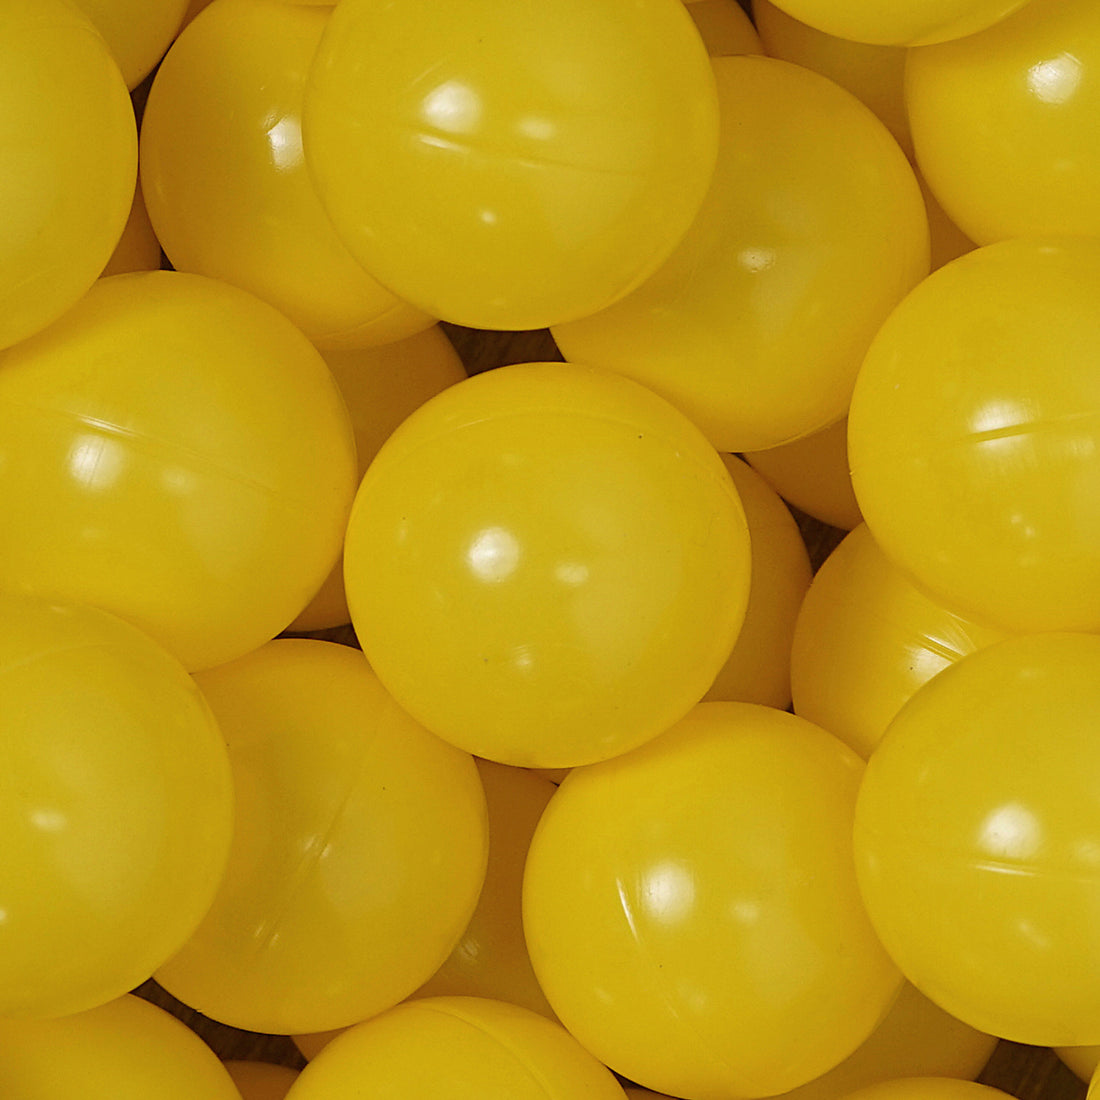 Bälle in gelb - völlig schadstofffrei! | Restposten - meinbaellebad 